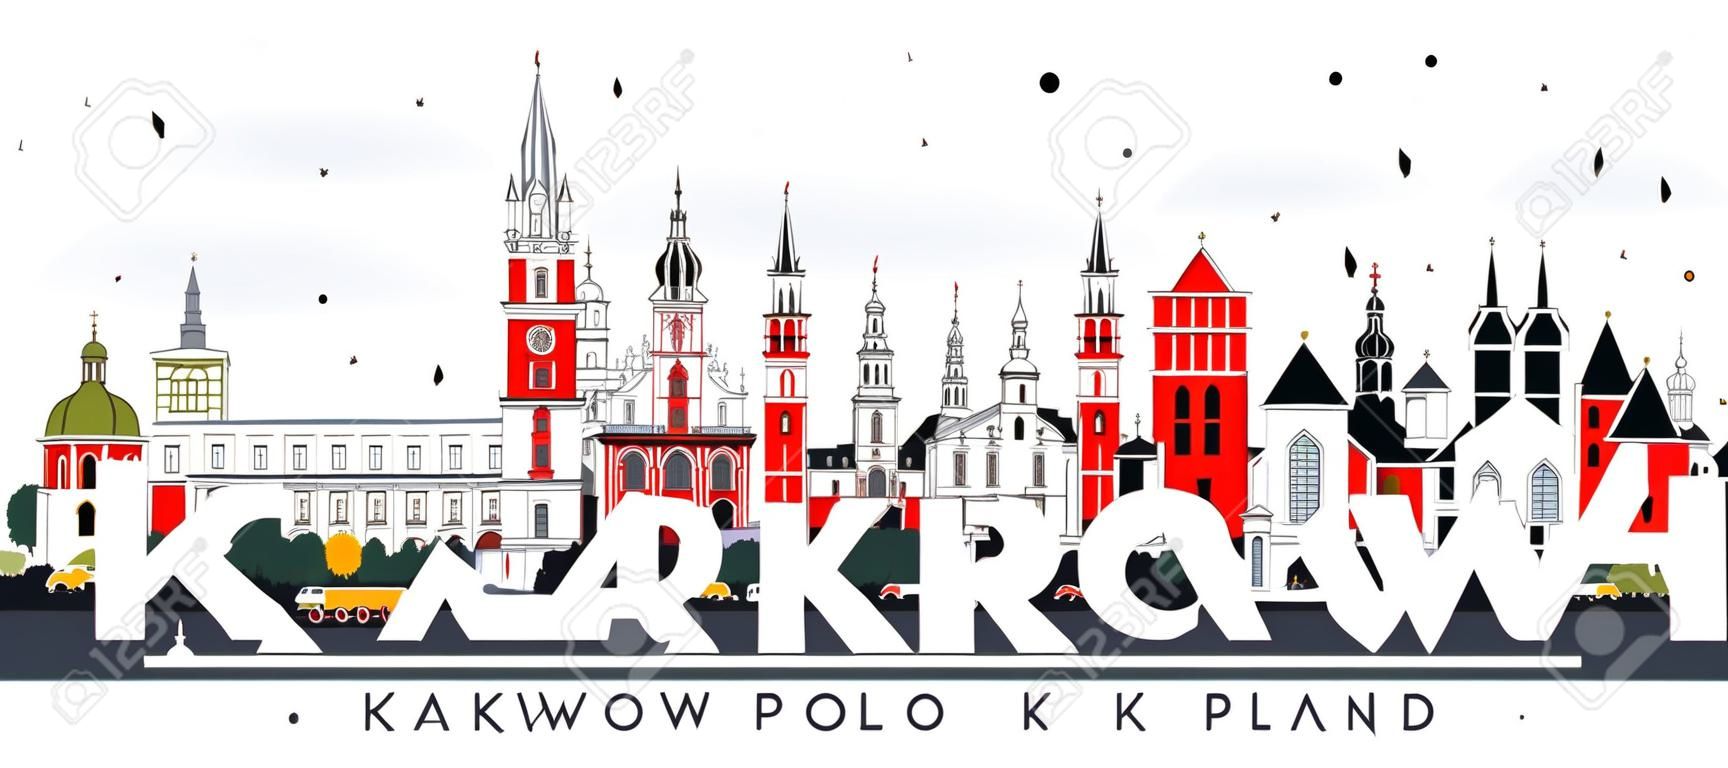 Горизонты города Краков Польша с зданиями цвета, изолированные на белом. Векторные иллюстрации. Деловые поездки и концепция туризма с исторической архитектурой. Городской пейзаж Кракова с достопримечательностями.